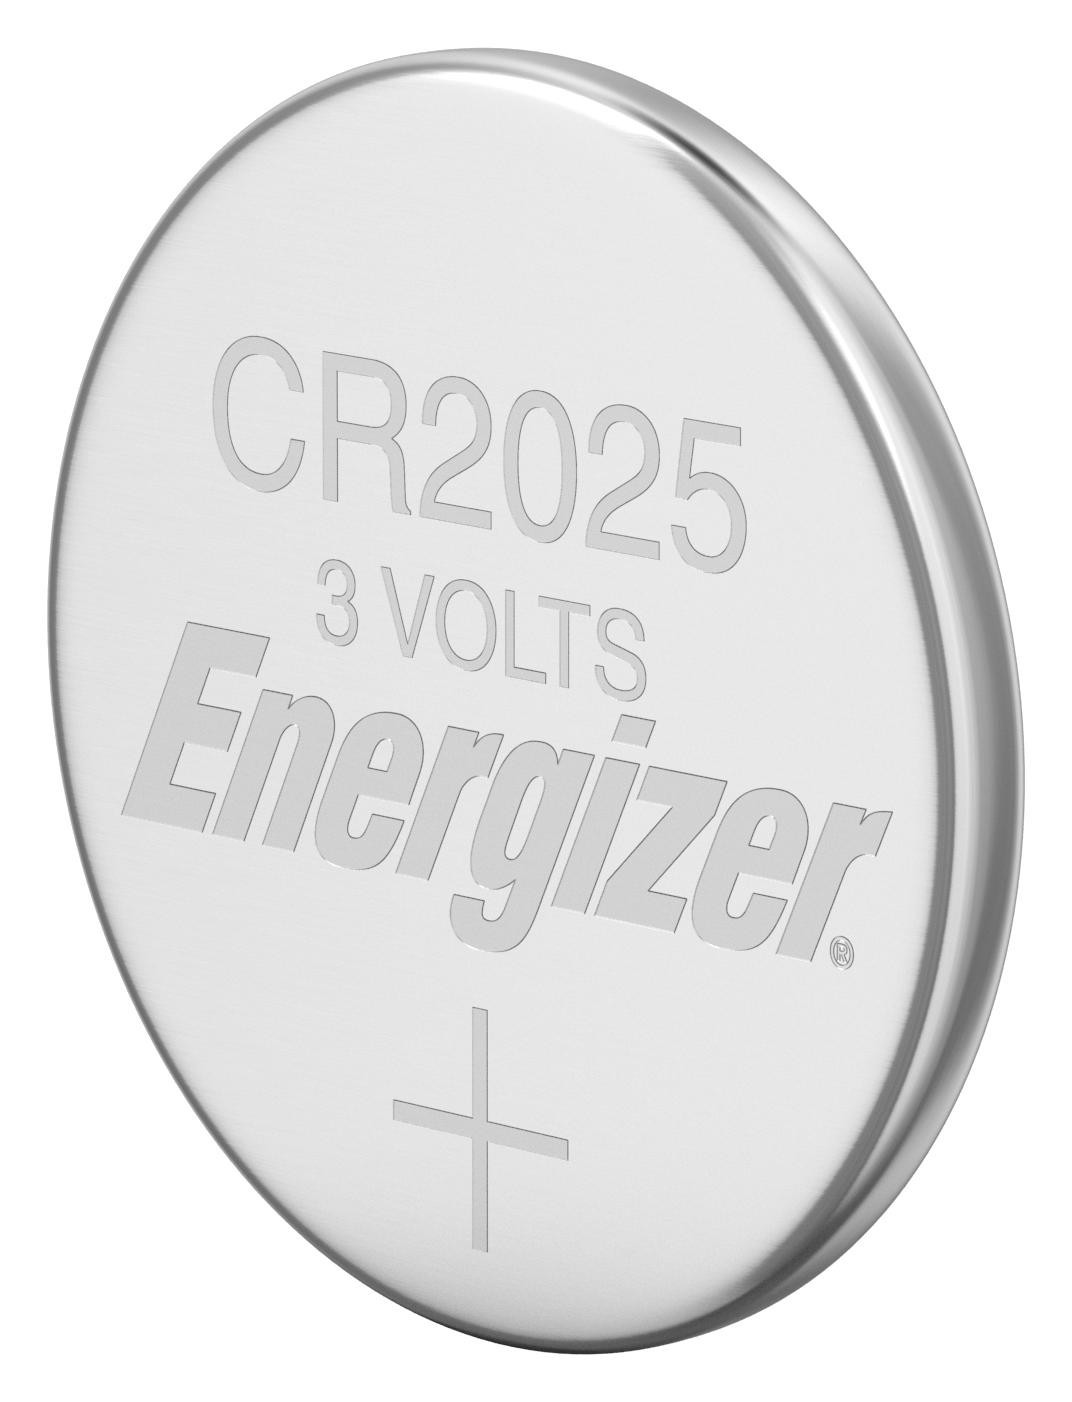 Energizer 7638900083026 Battery, Lithium, 3V, 0.17Ah